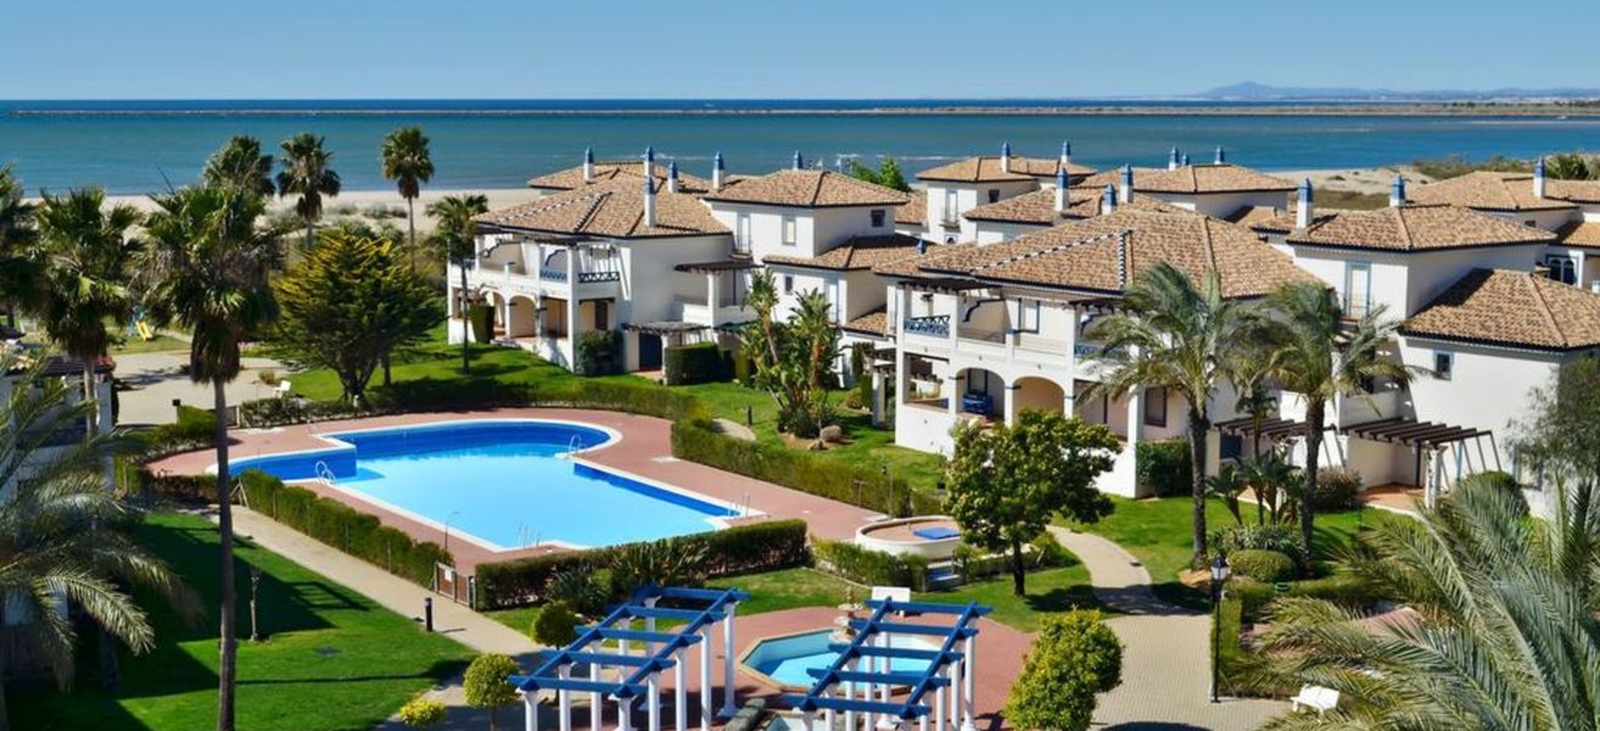 Los 5 mejores lugares de vacaciones en Huelva